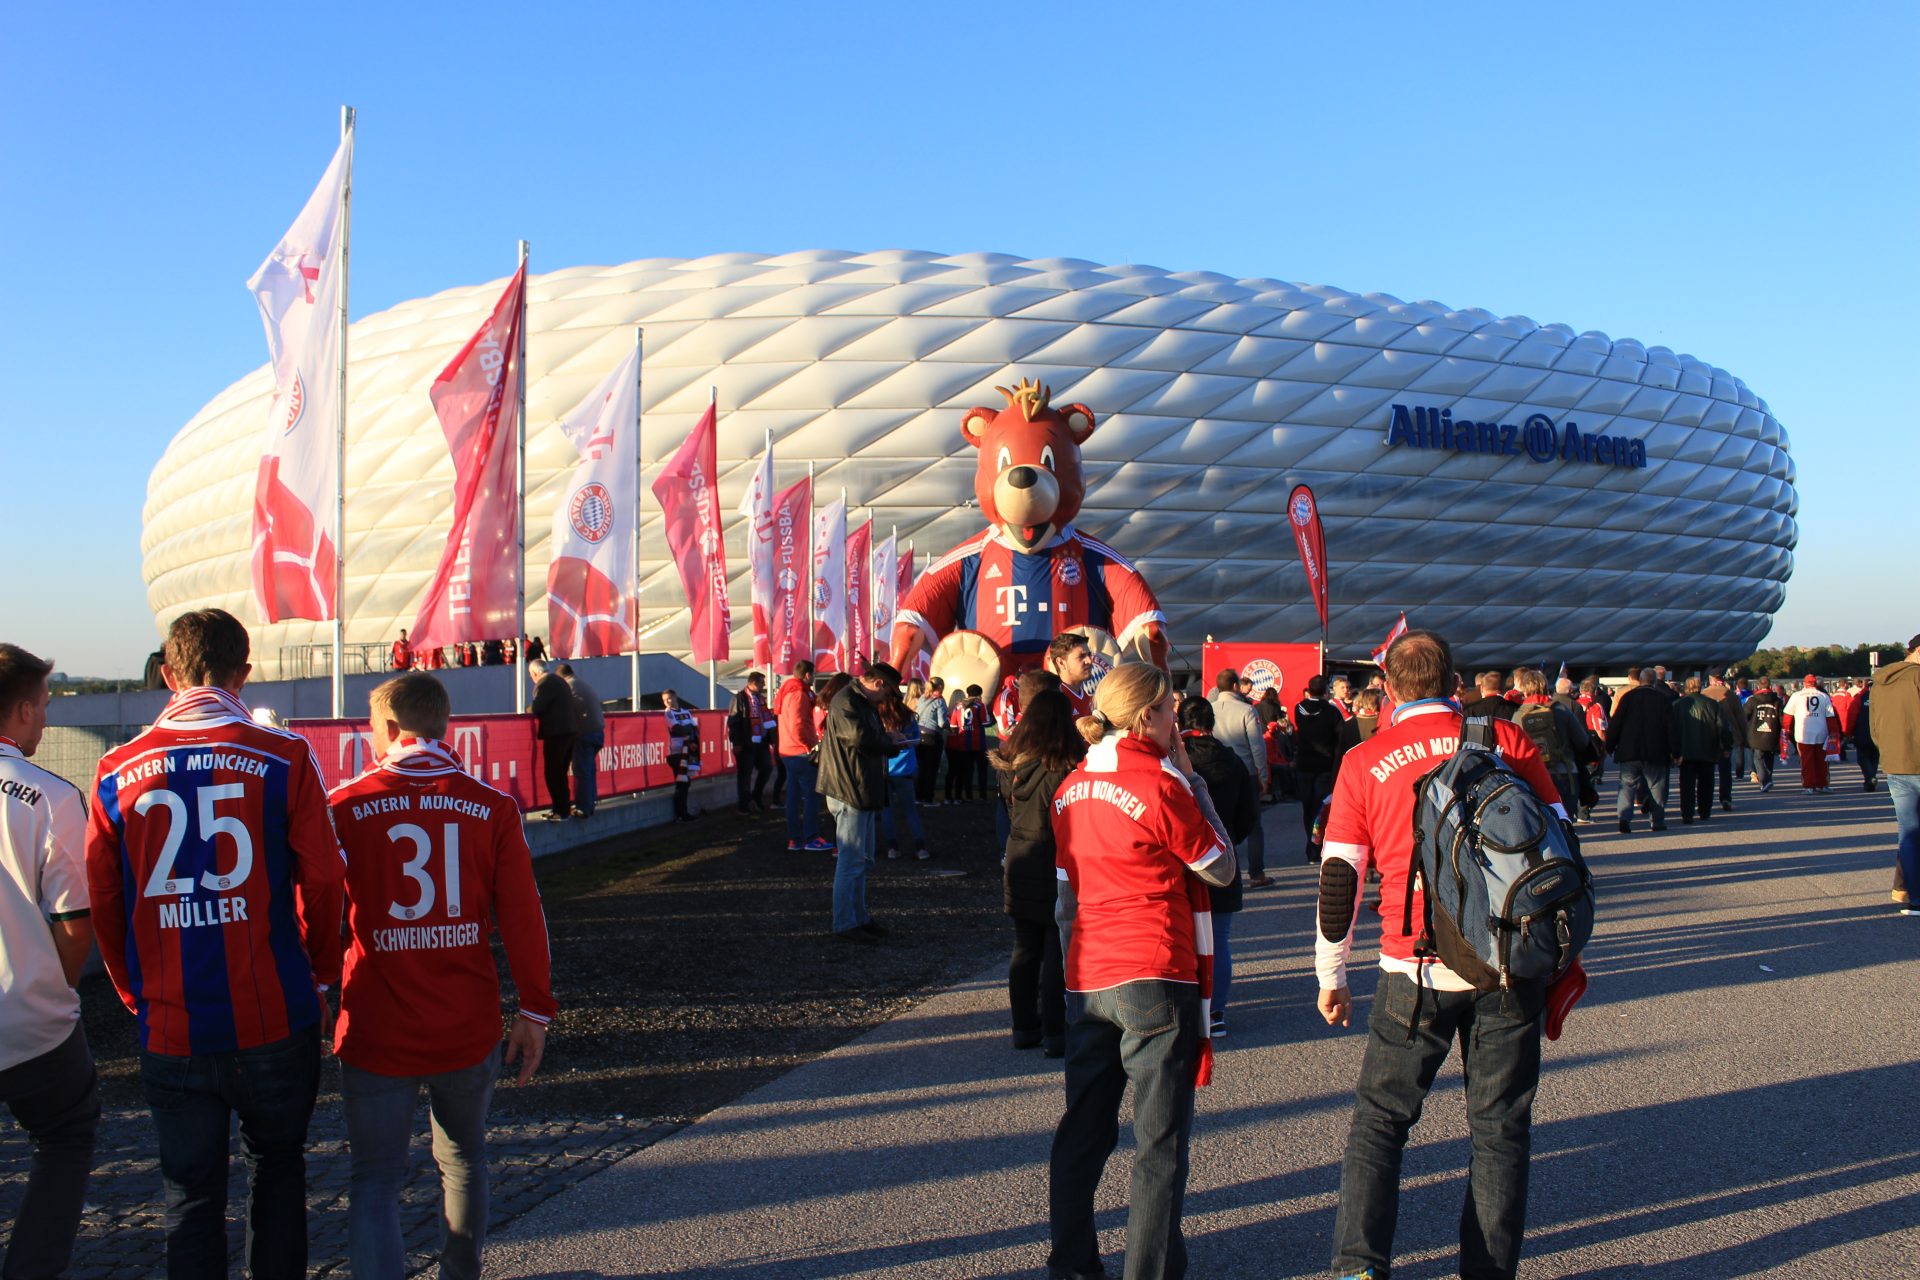 Bayern Munich Allianz Arena